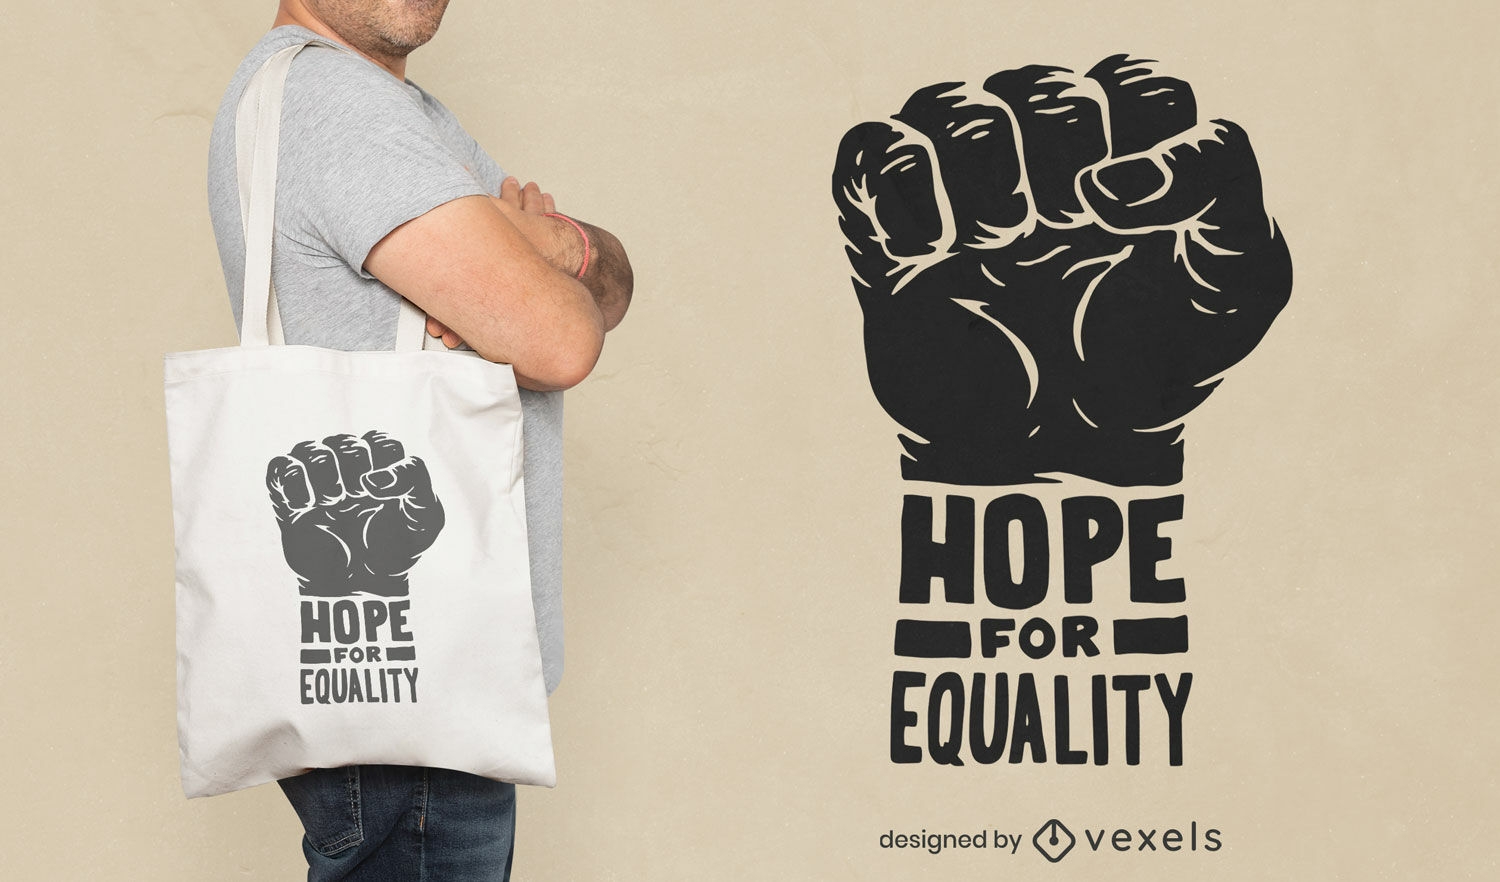 Dise?o de bolsa de asas de esperanza para la igualdad.